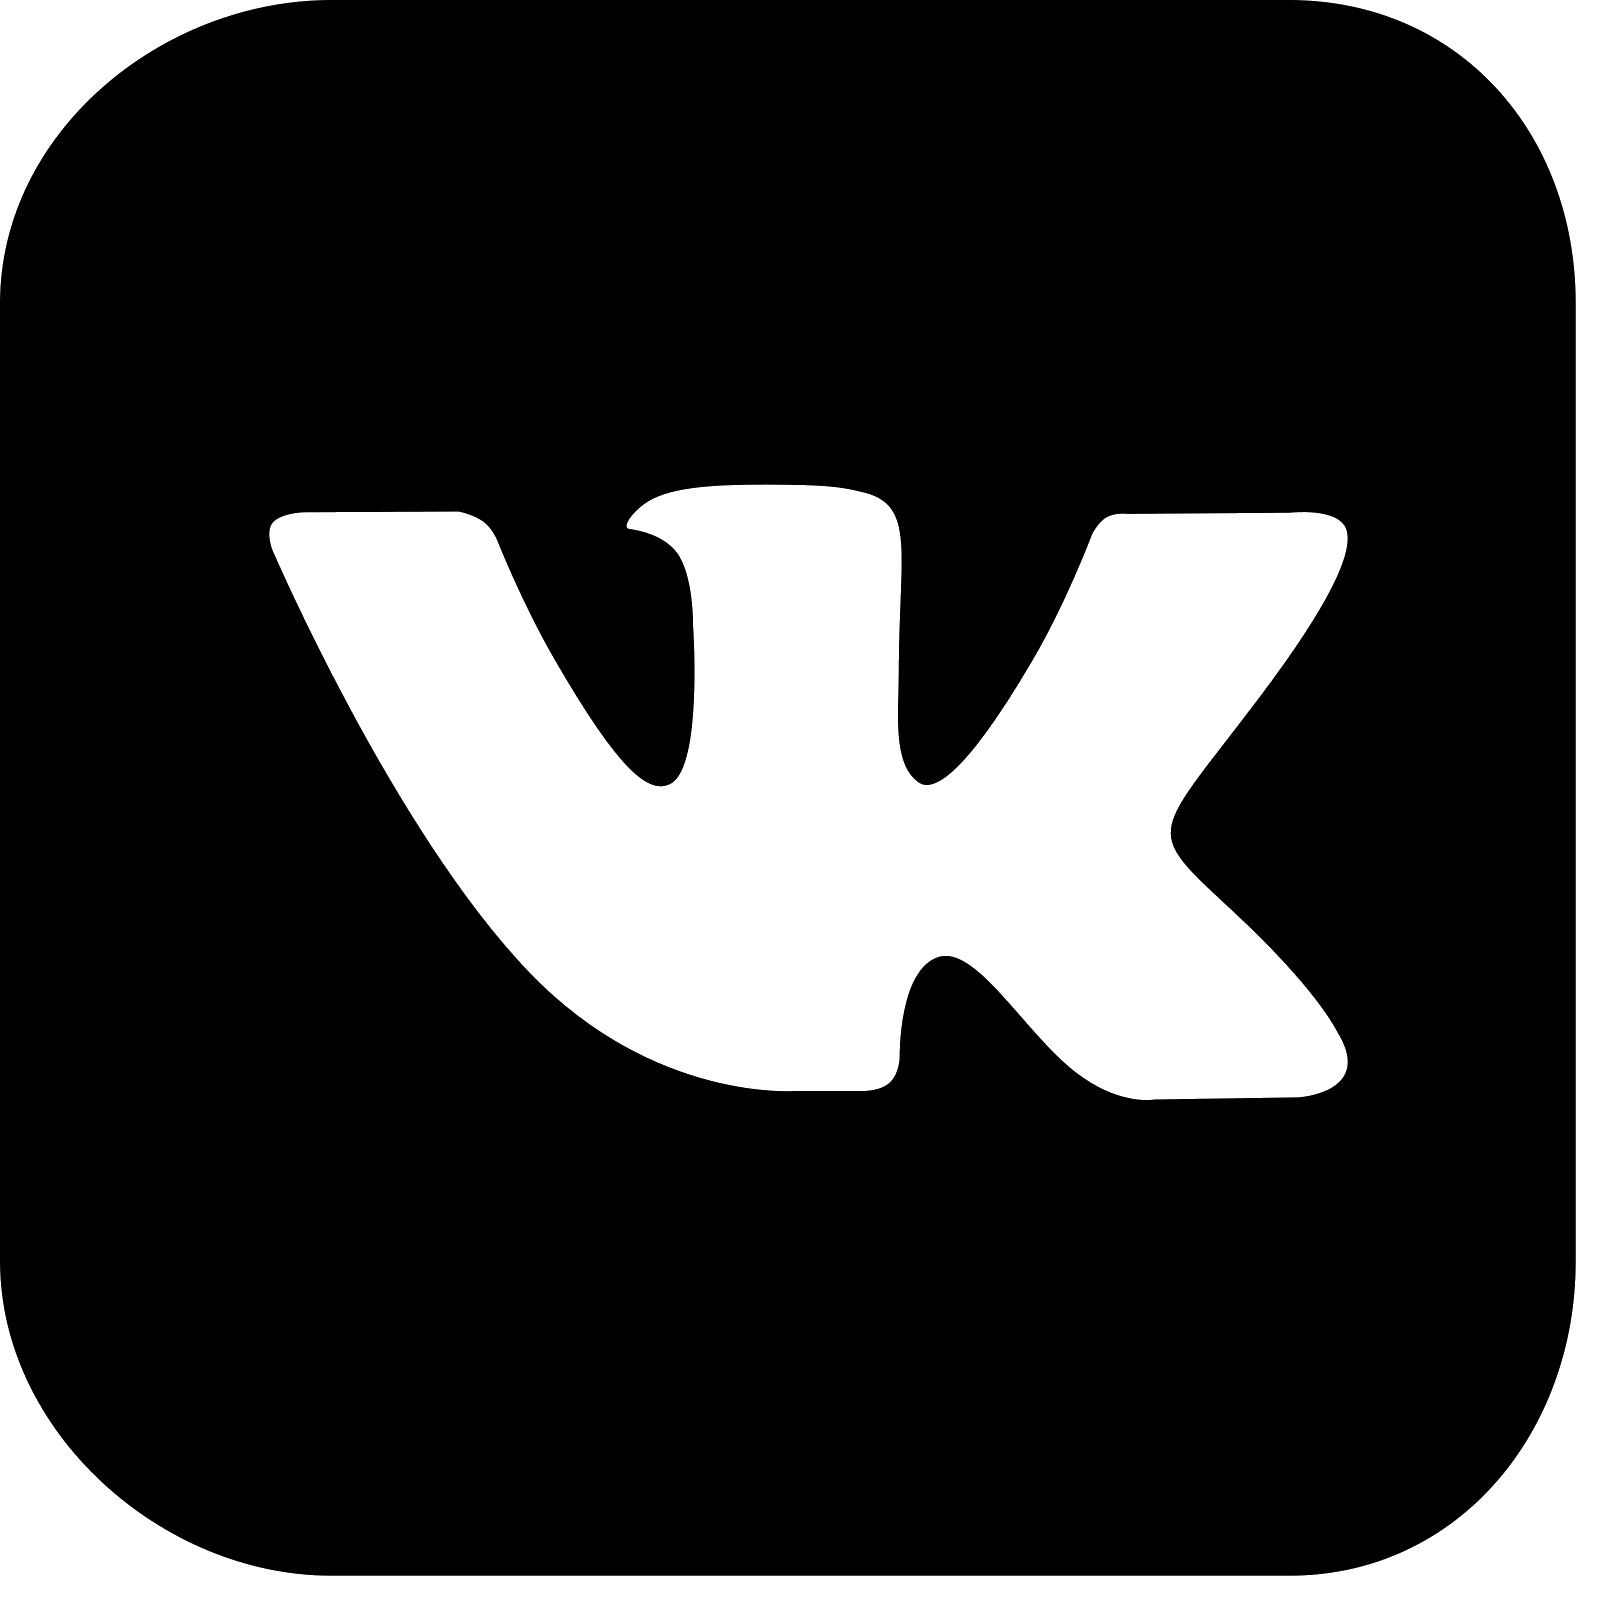 Https new vk. Логотип ВК. Маленький значок ВК. Логотип ВК черный. Логотип ВК без фона.